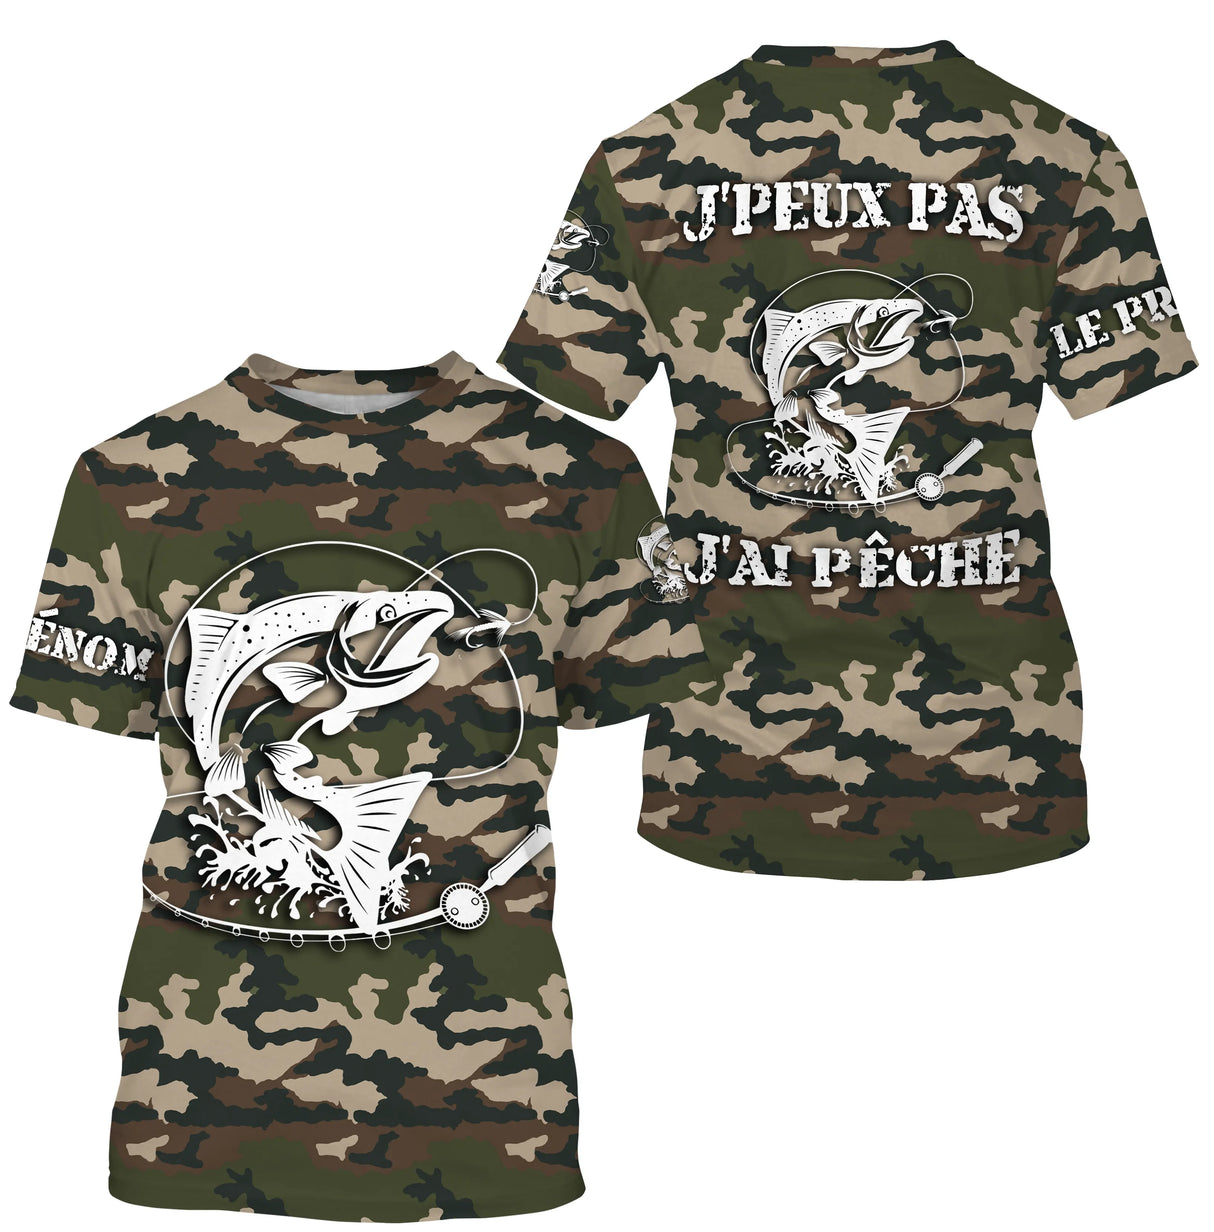 Camiseta Humor Pesca Salmón, Regalo Original Pescador, Camuflaje para Pescar, Camiseta Personalizada, No Puedo Tener Pesca - CTS26042215